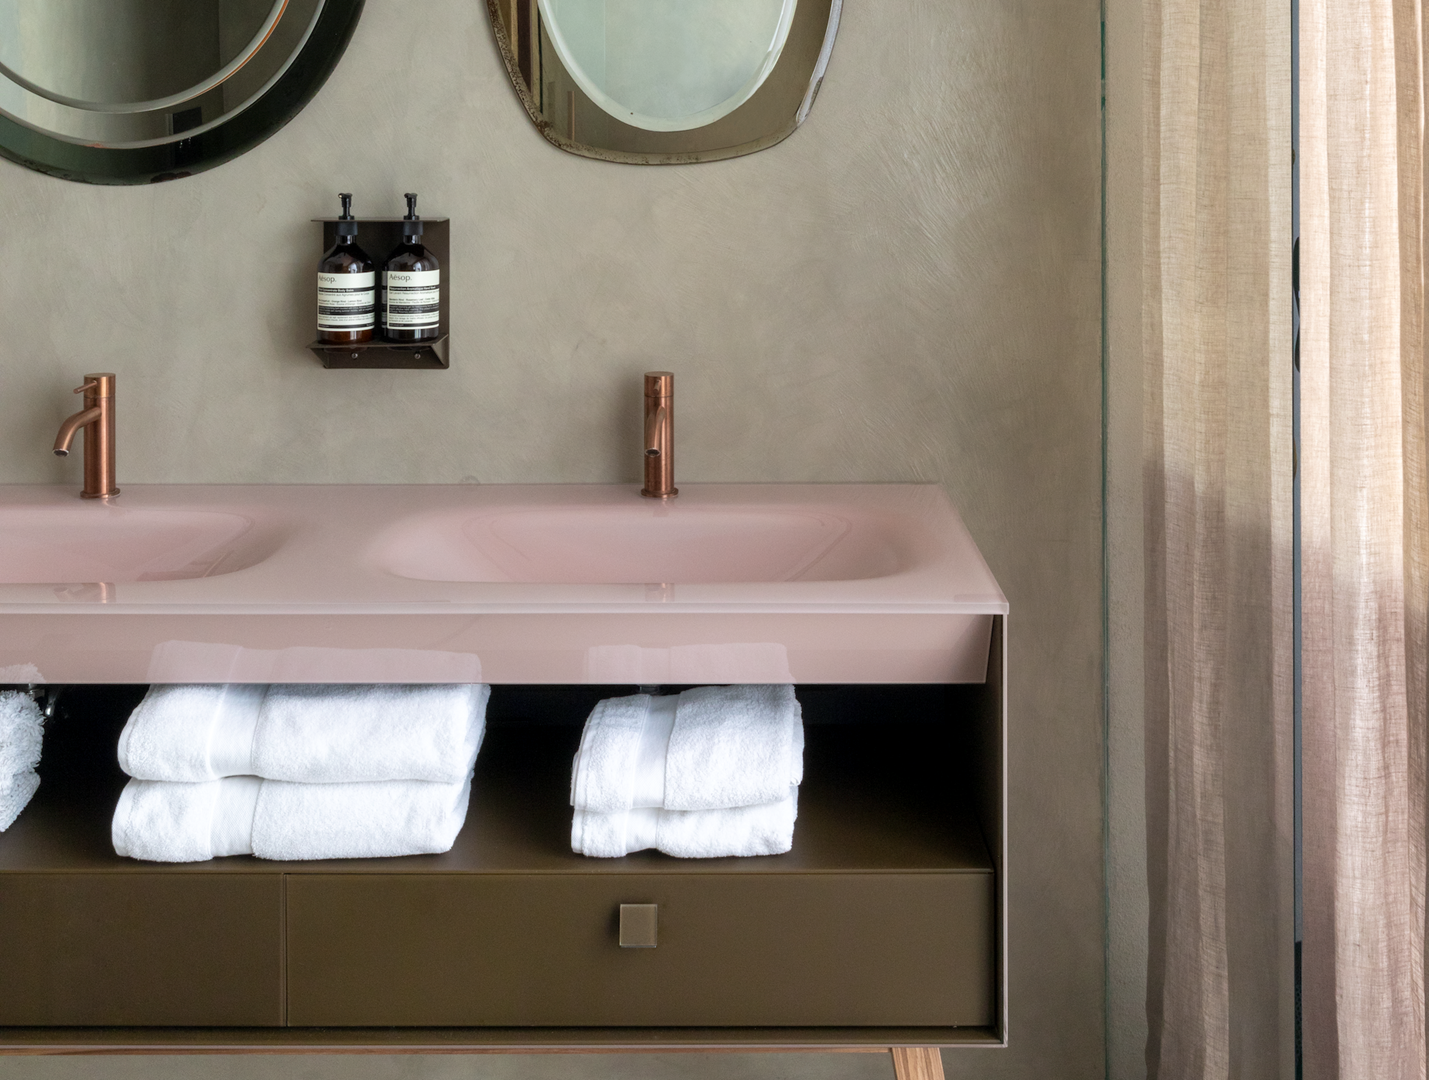 Kalksteen Zeep kleuring 7 x handdoeken van hotelkwaliteit voor jouw badkamer